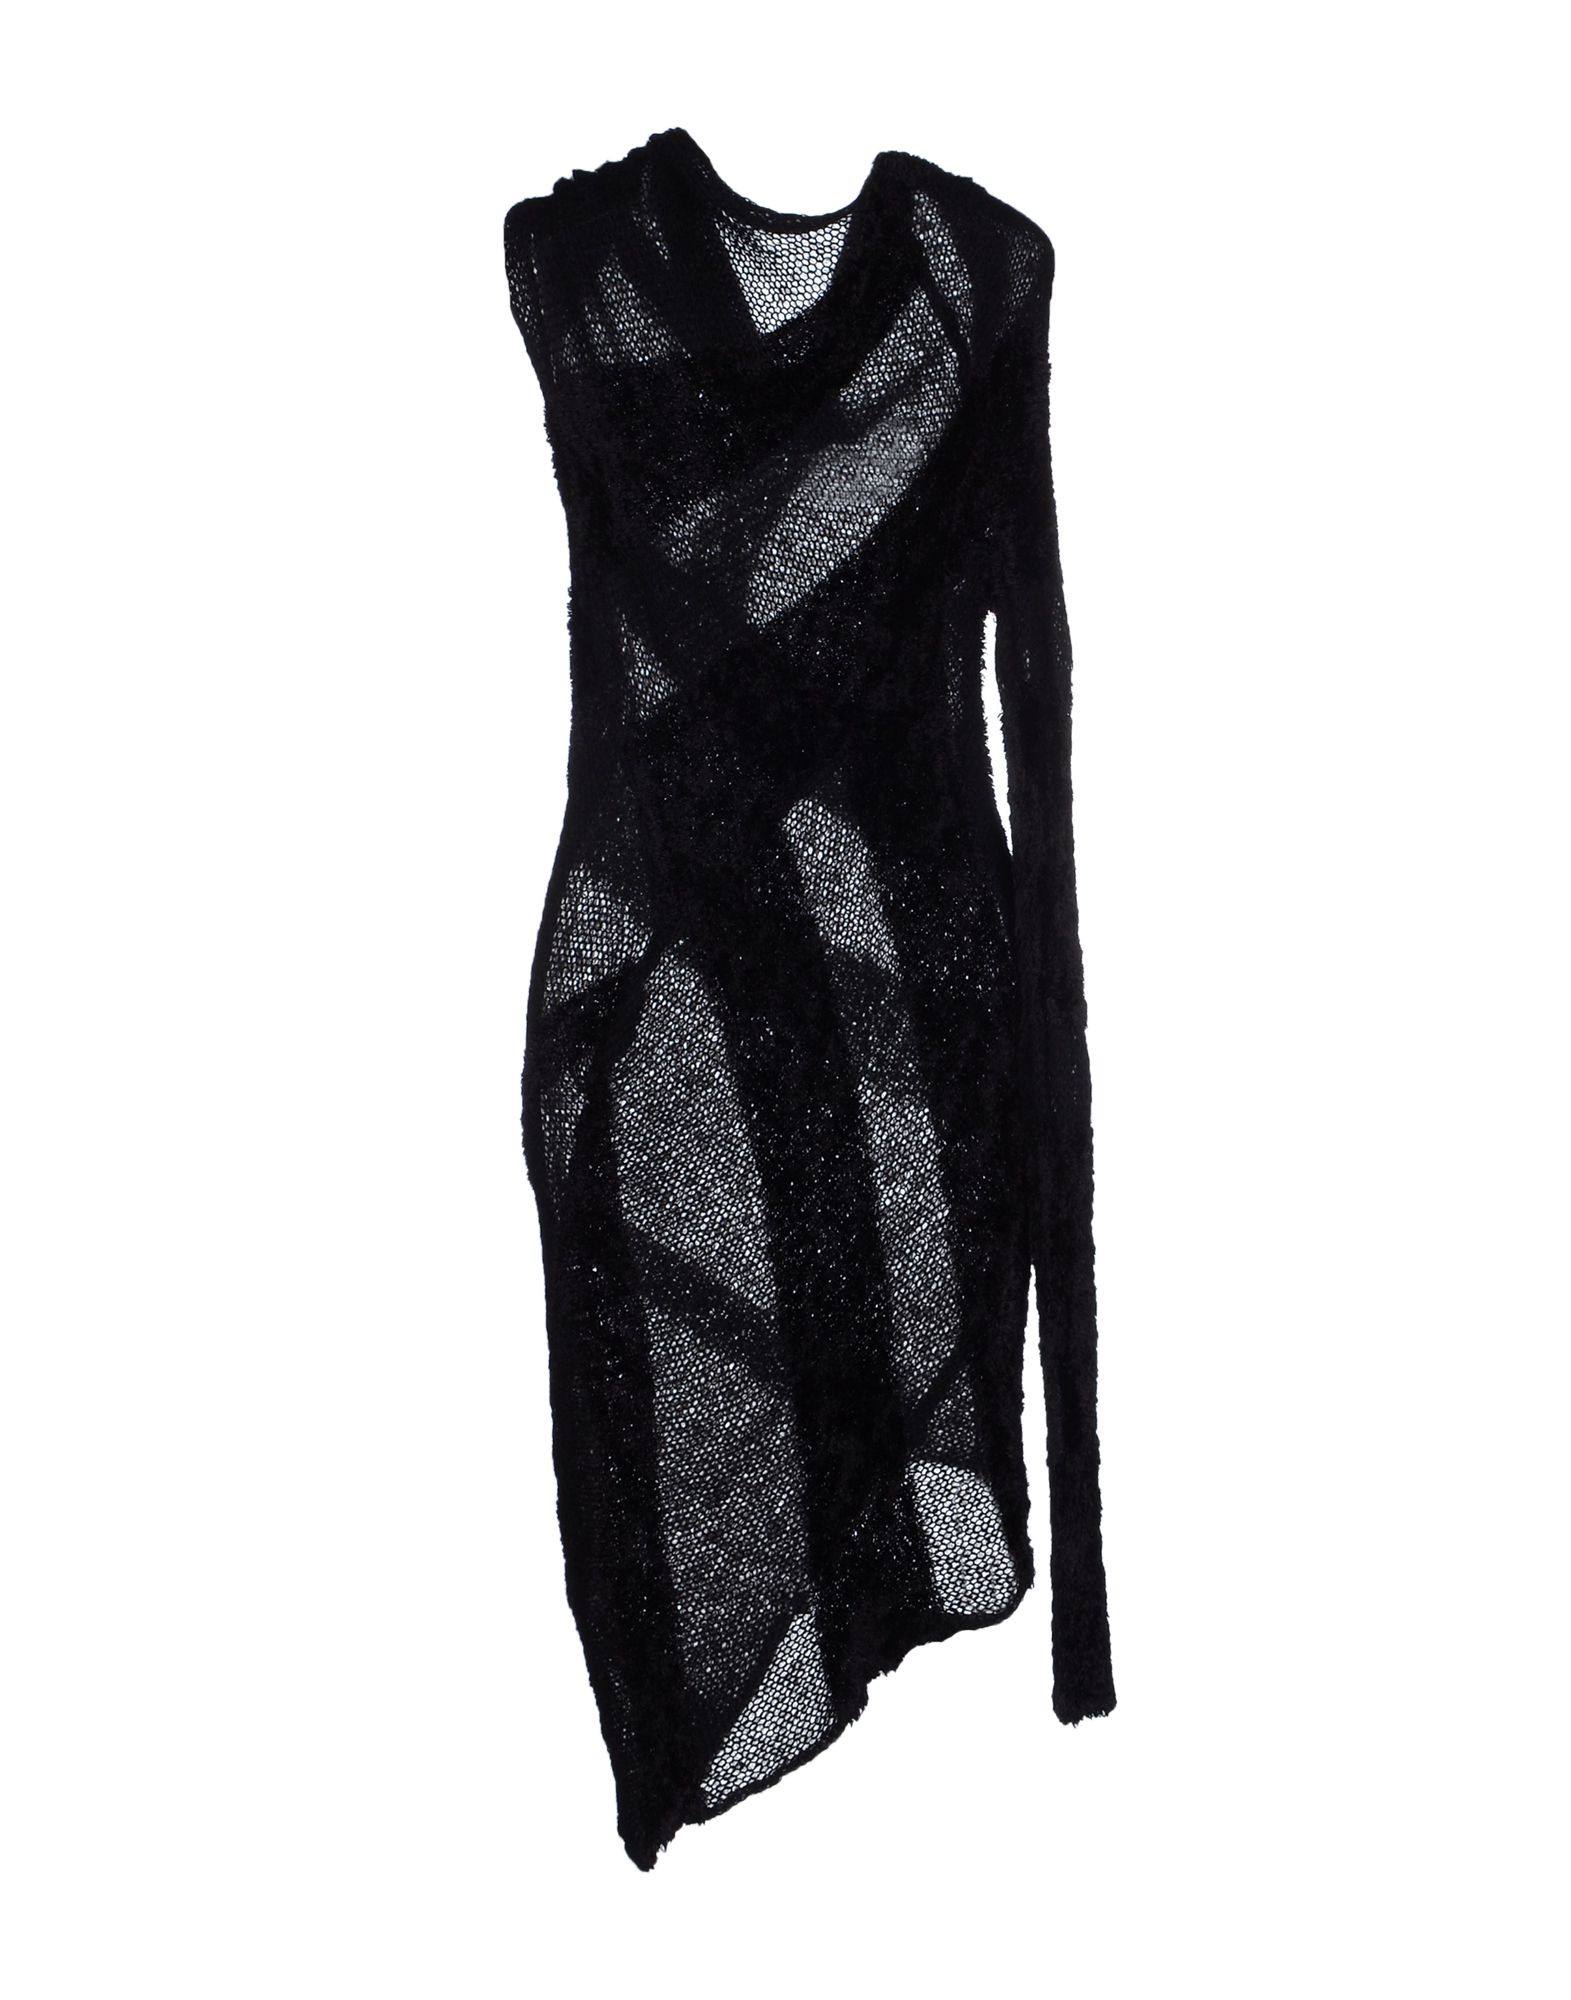 Lyst - Alessandra marchi Short Dress in Black